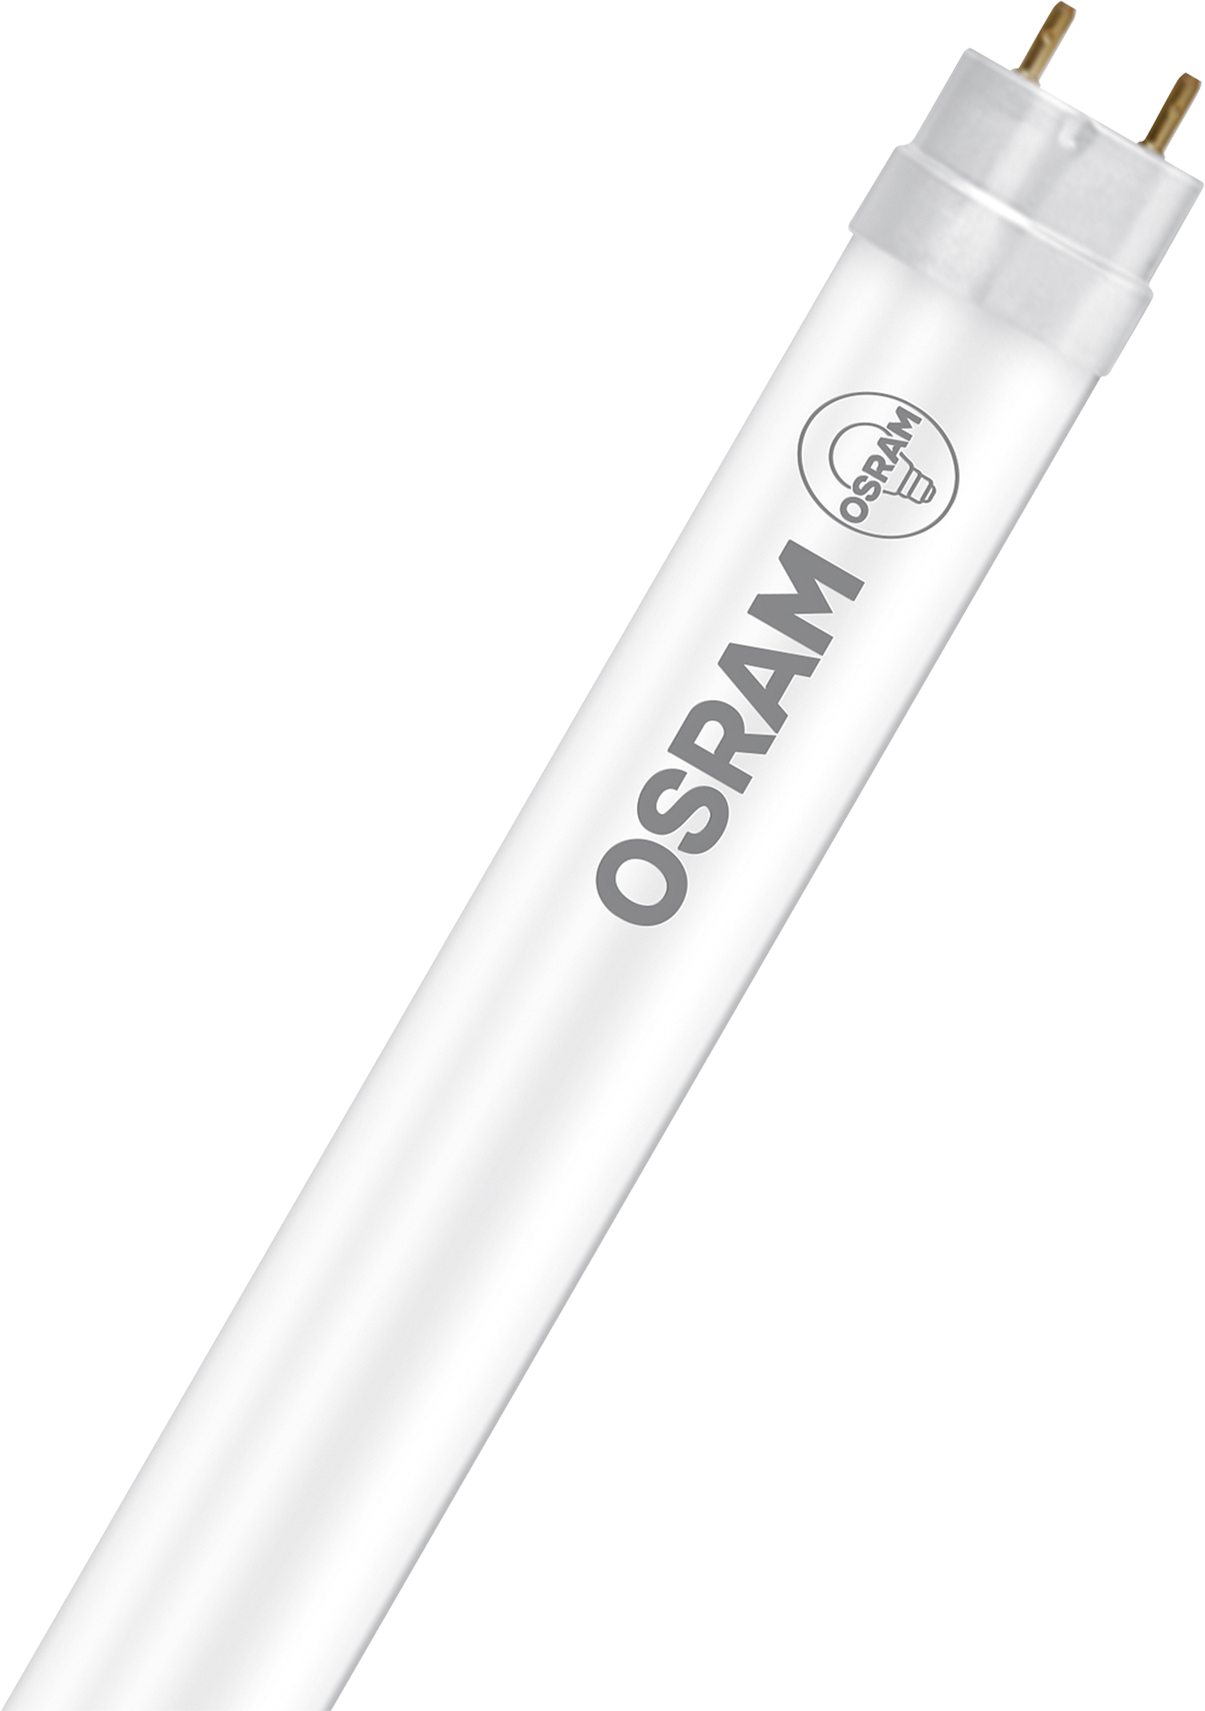 OSRAM LED-Lampe Star Substi T8 G13, 18.3W, 2200lm, Cool White, Ø 26.8mm - Lampen, Leuchten